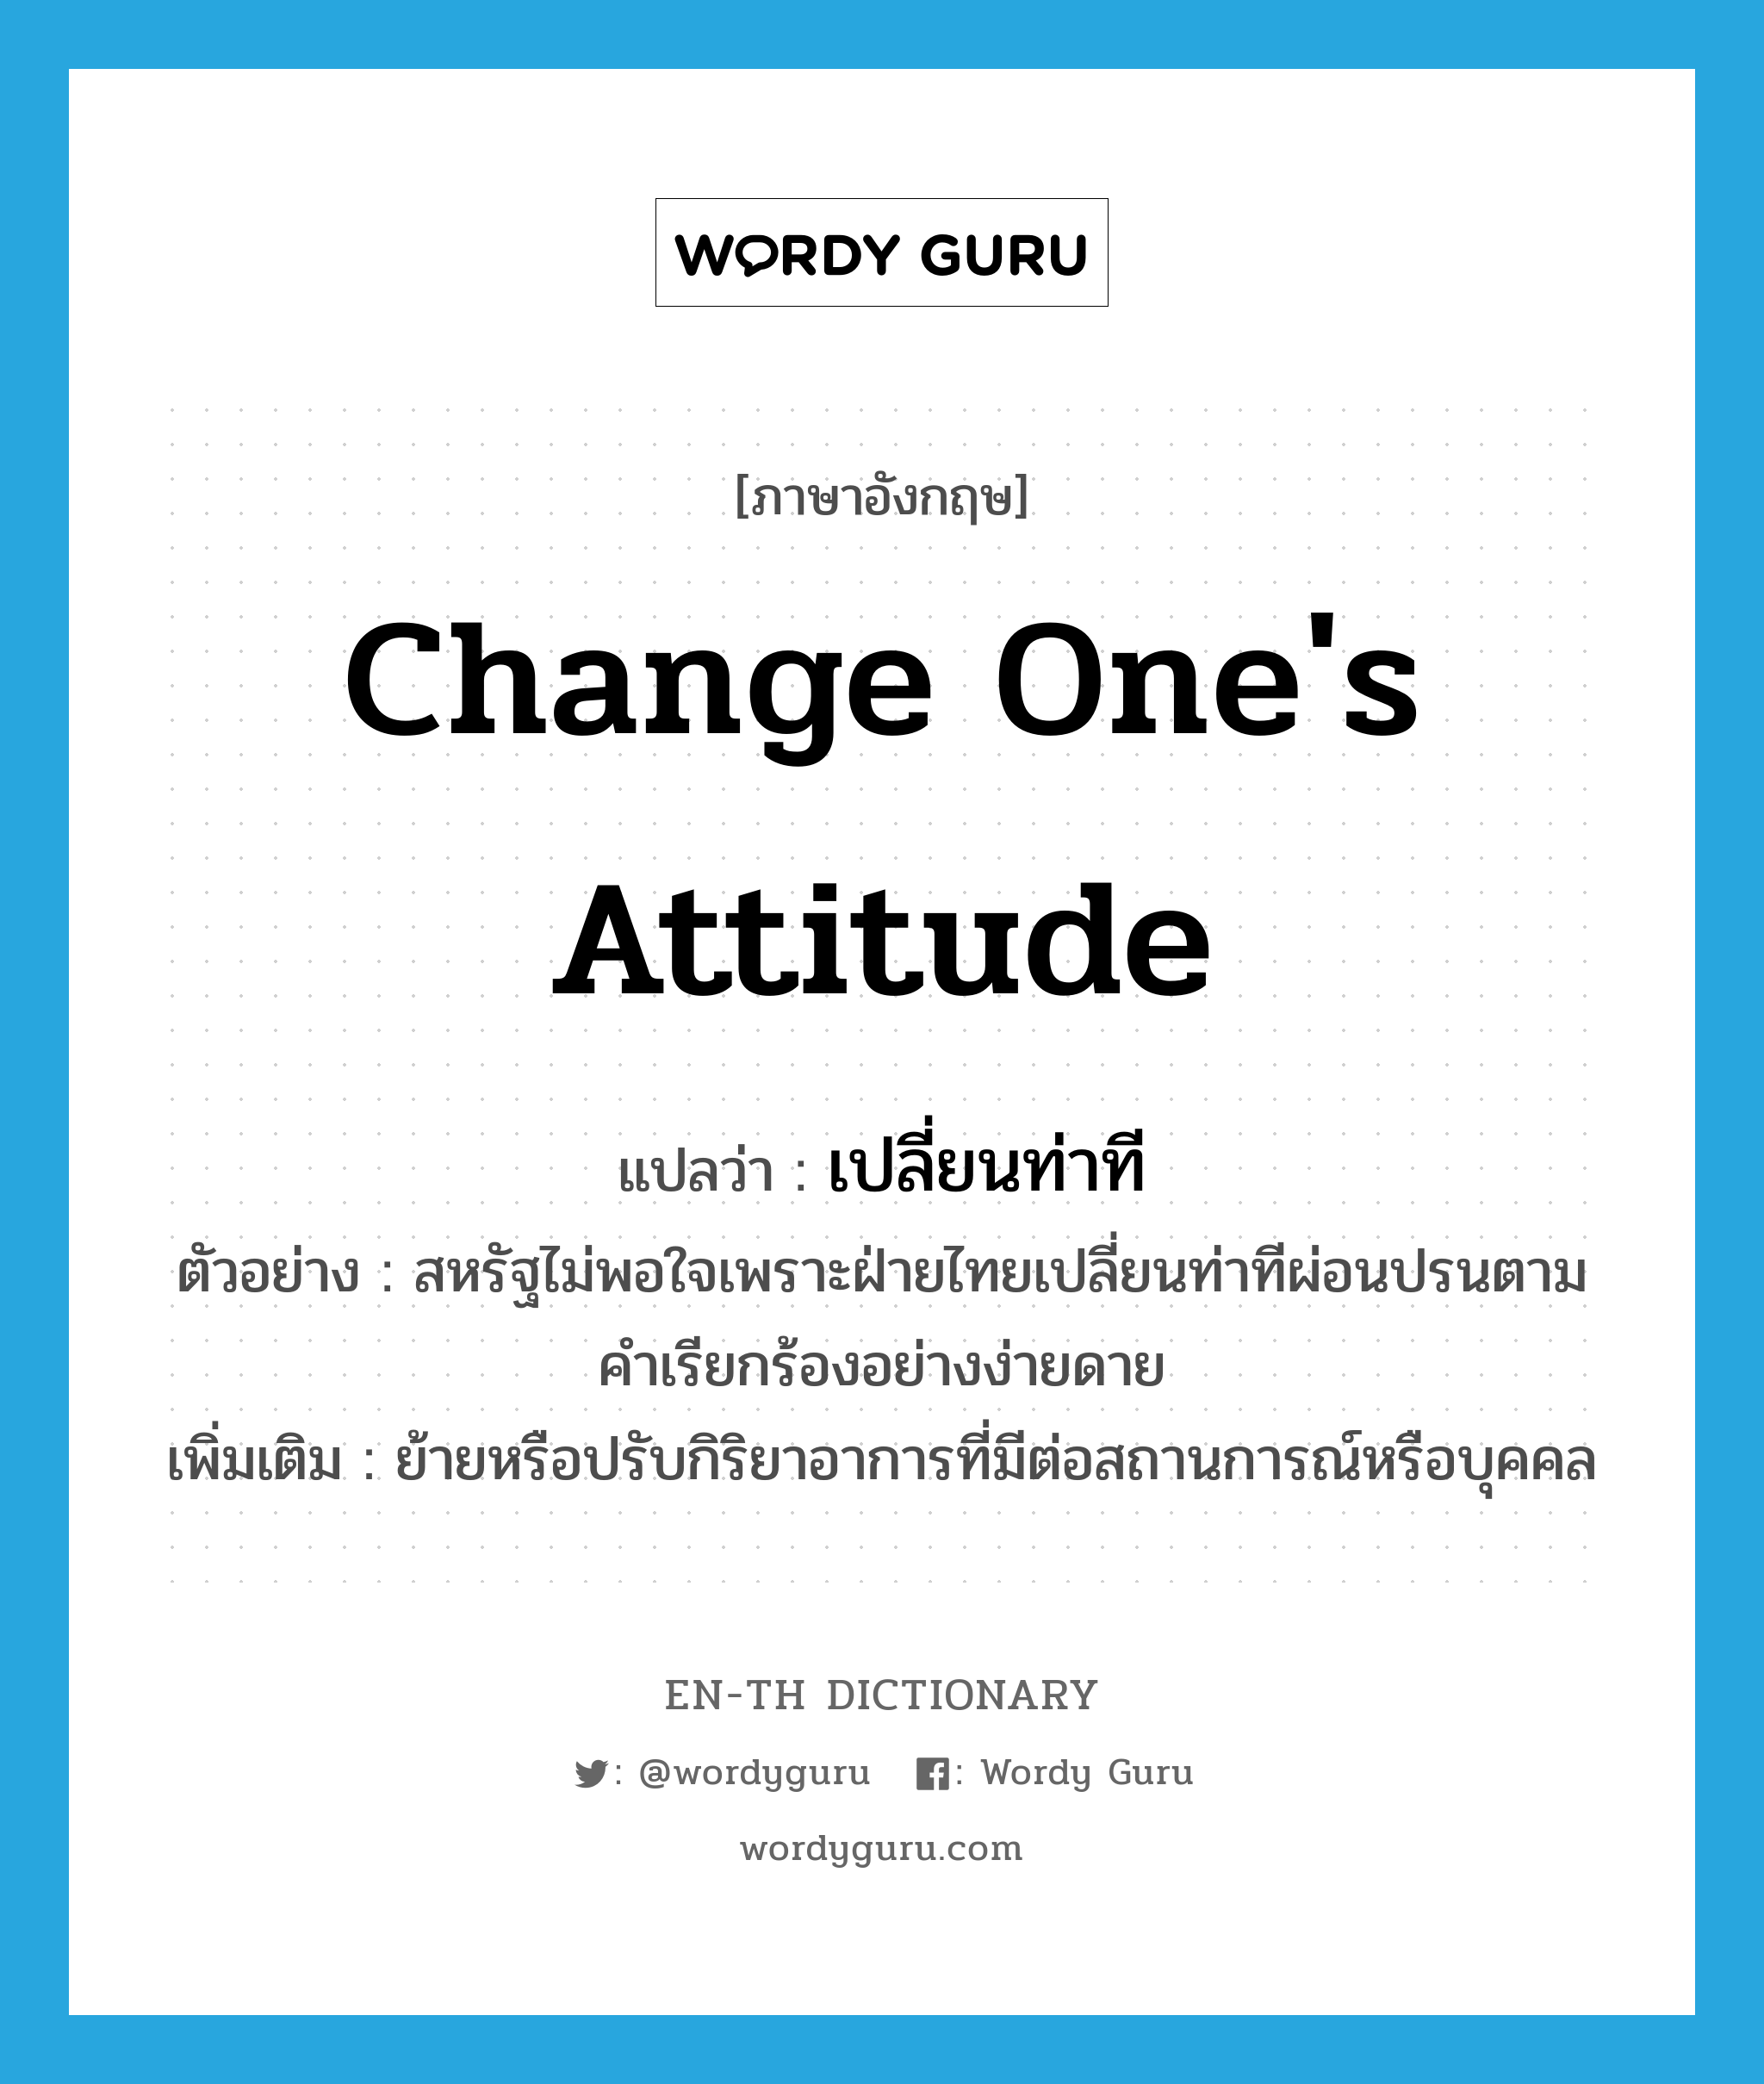 change one's attitude แปลว่า?, คำศัพท์ภาษาอังกฤษ change one's attitude แปลว่า เปลี่ยนท่าที ประเภท V ตัวอย่าง สหรัฐไม่พอใจเพราะฝ่ายไทยเปลี่ยนท่าทีผ่อนปรนตามคำเรียกร้องอย่างง่ายดาย เพิ่มเติม ย้ายหรือปรับกิริยาอาการที่มีต่อสถานการณ์หรือบุคคล หมวด V